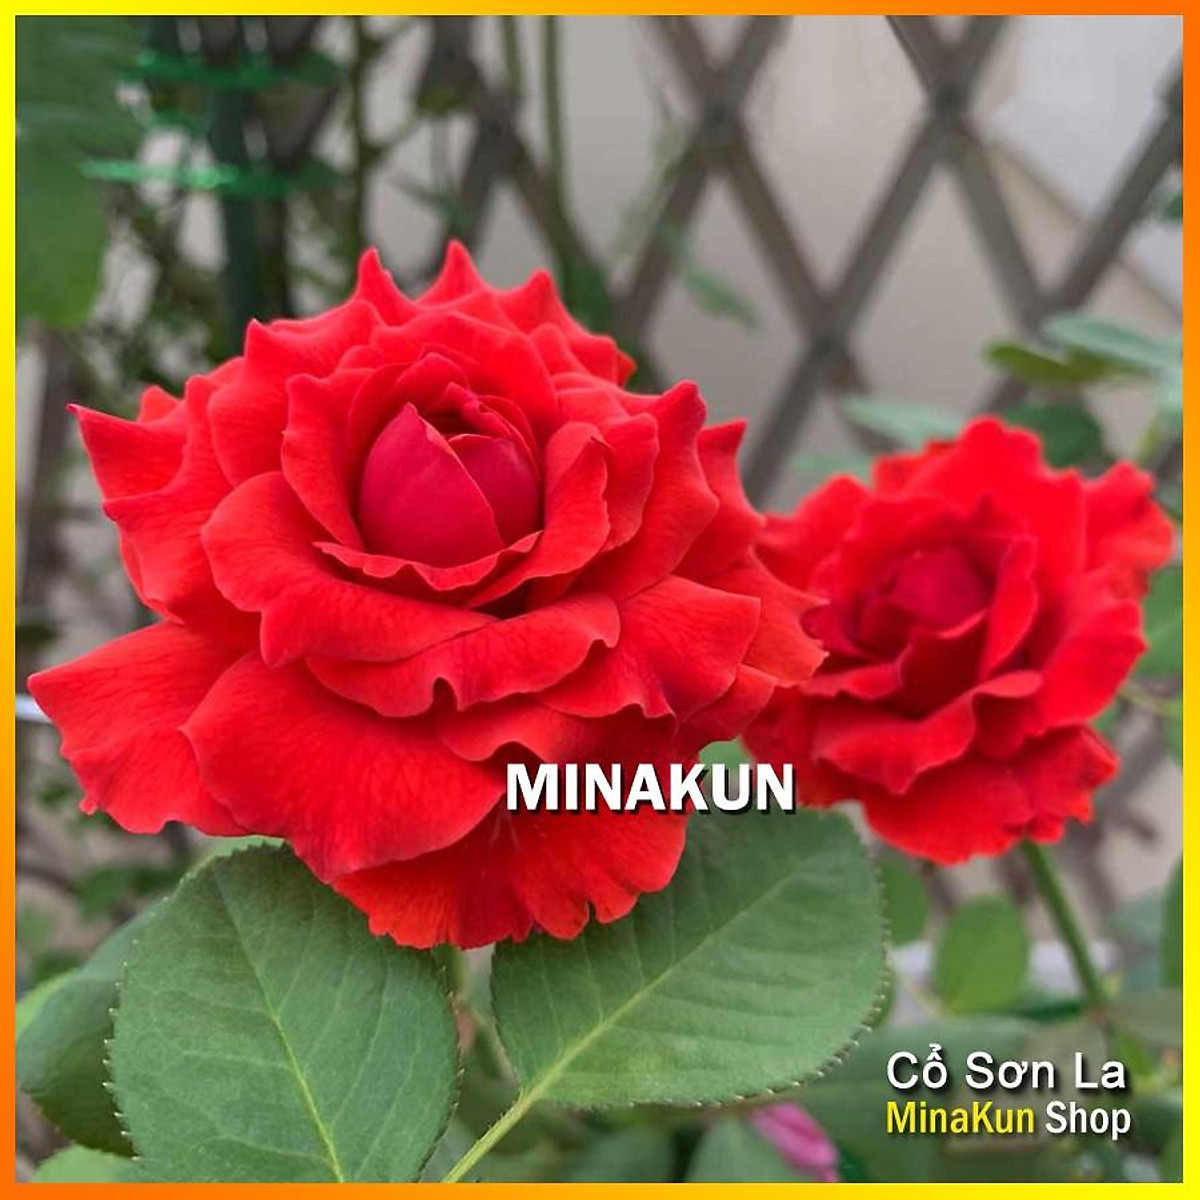 Hoa hồng cổ Sơn La đỏ nhung cực đẹp (leo) - MinaKun Shop - Hoa tươi